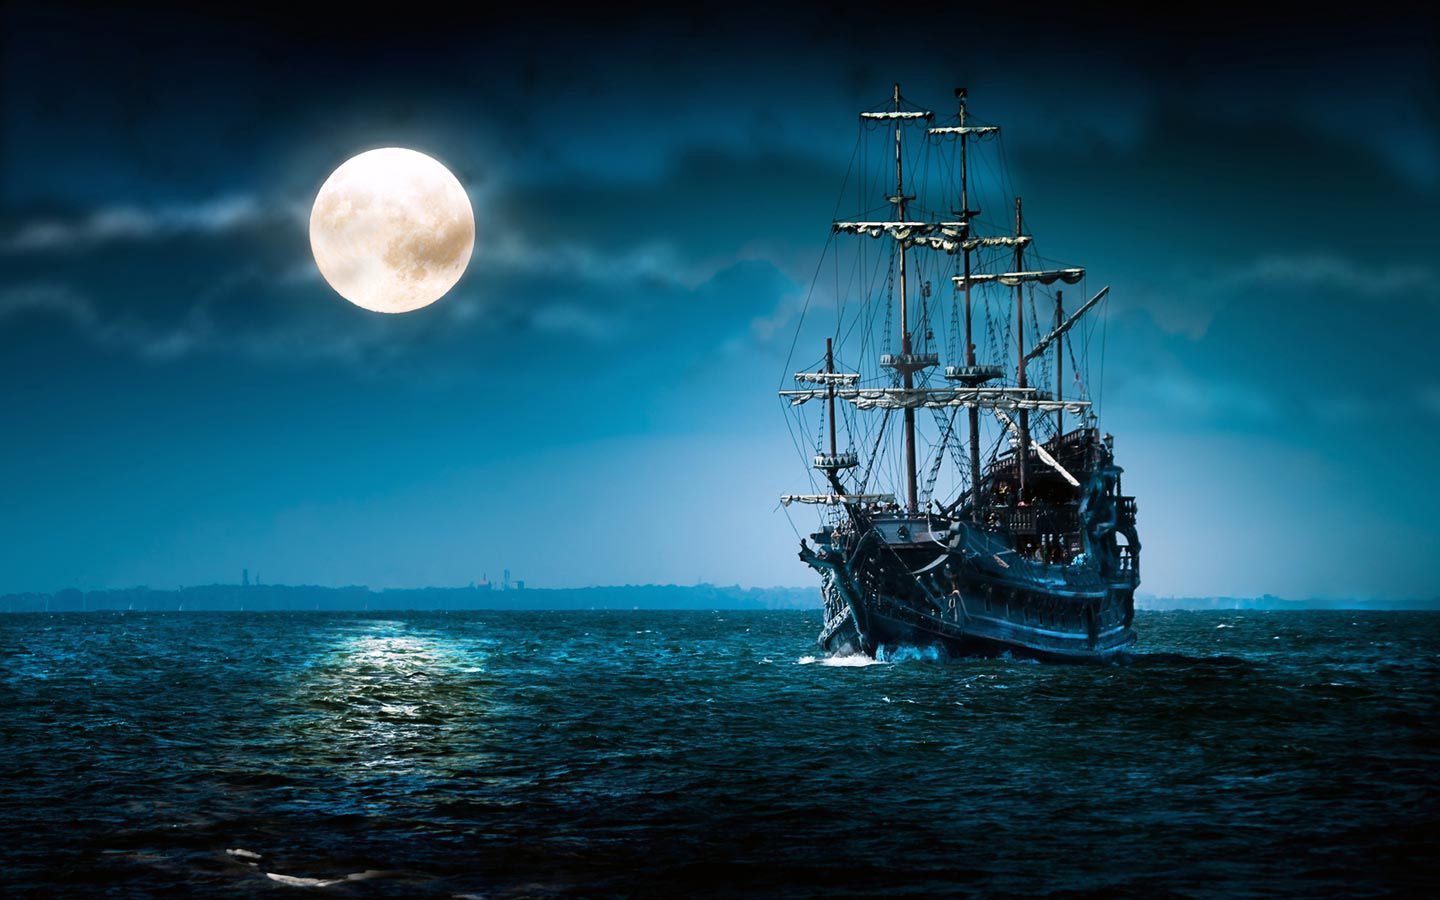 Pirate Ship Wallpaper Full HD. Sailing, Sailing